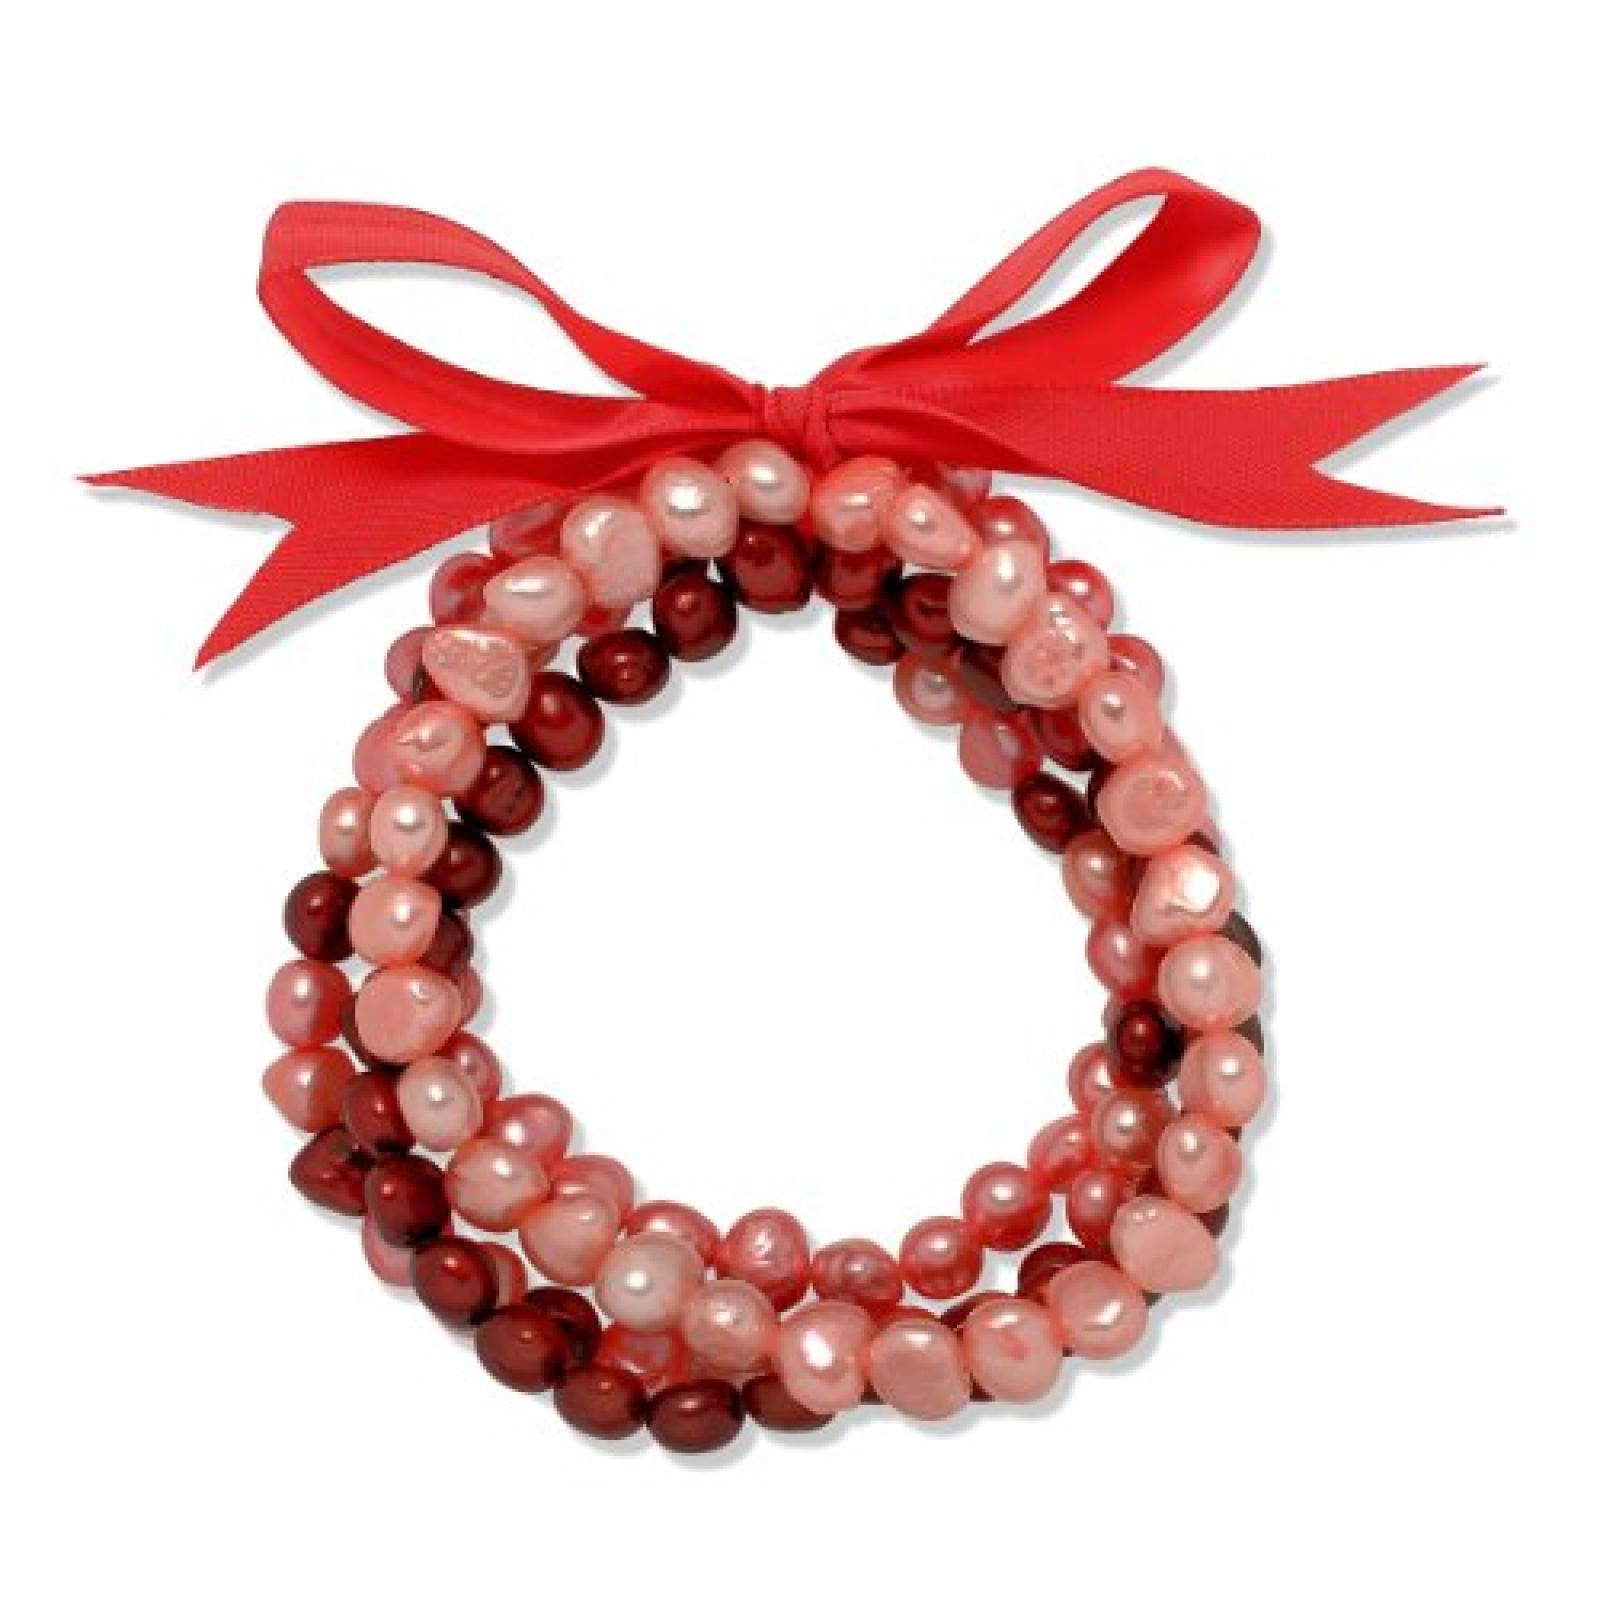 Valero Pearls Fashion Collection Damen-Armband Hochwertige Süßwasser-Zuchtperlen in ca.  5 mm Oval rosa / pink / purple  Satin rot  19 cm   60020088 